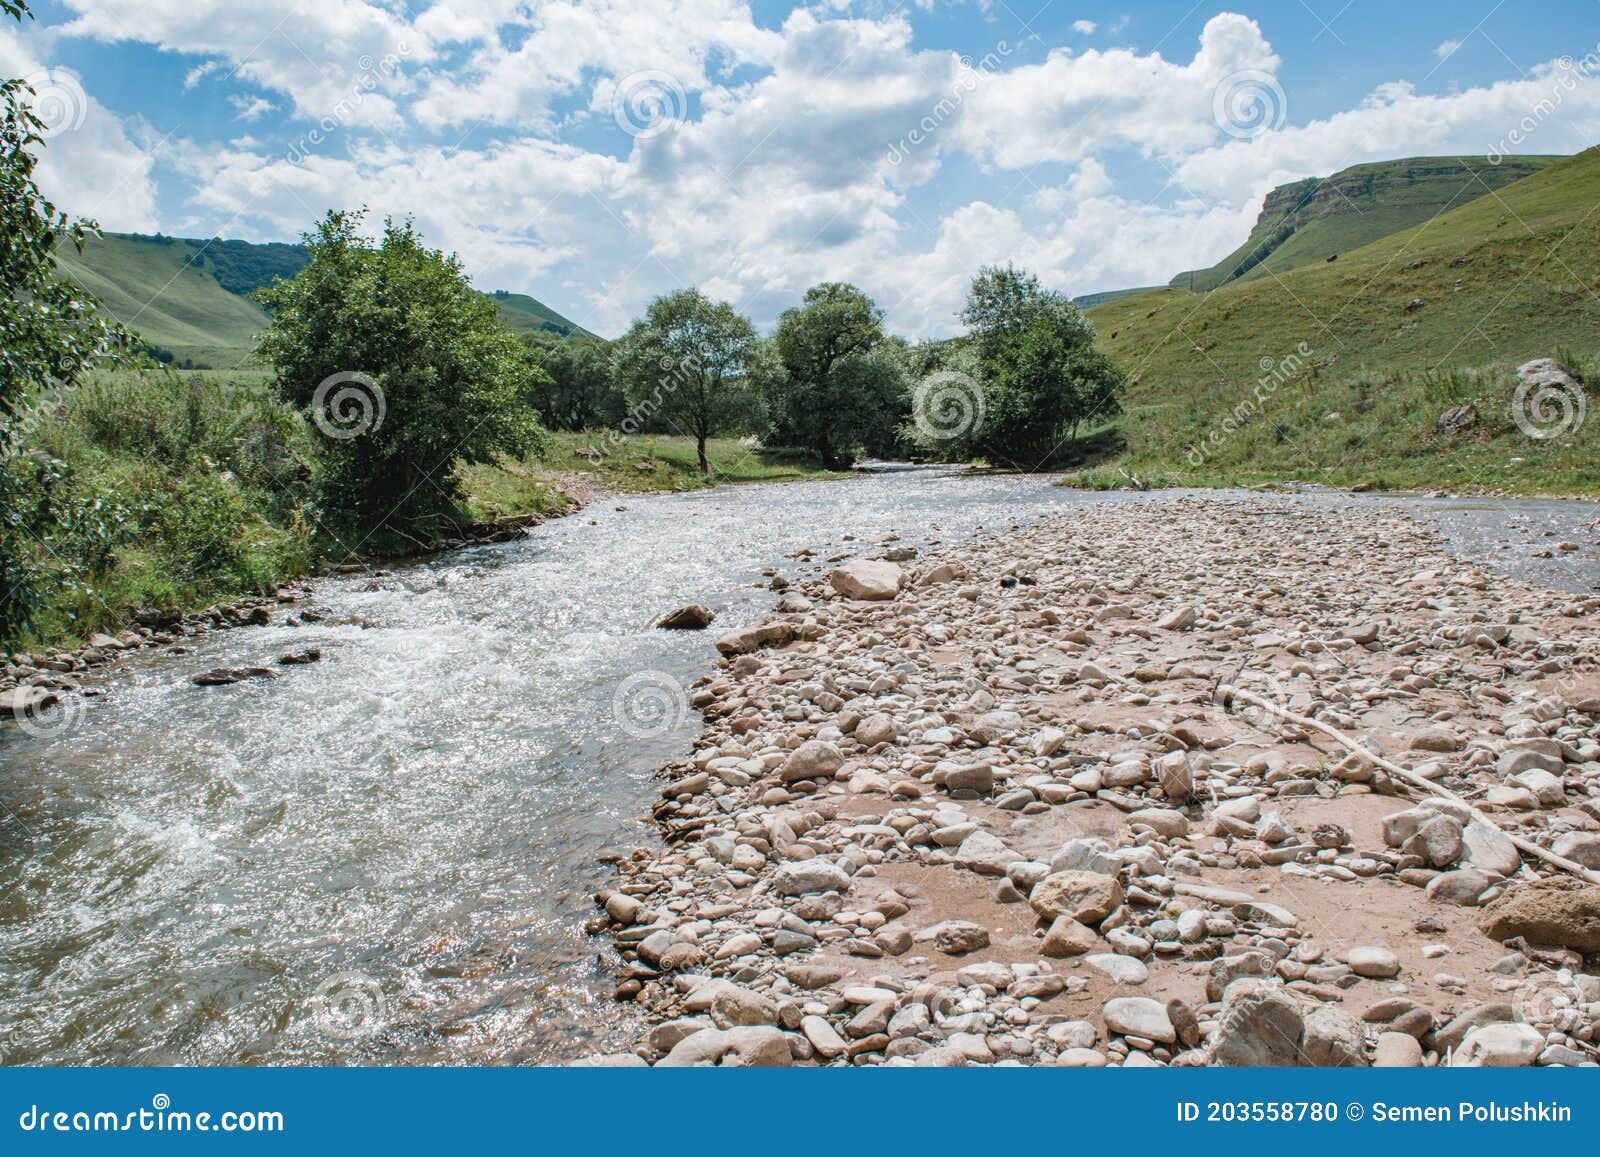 russian caucas mountains river landscape